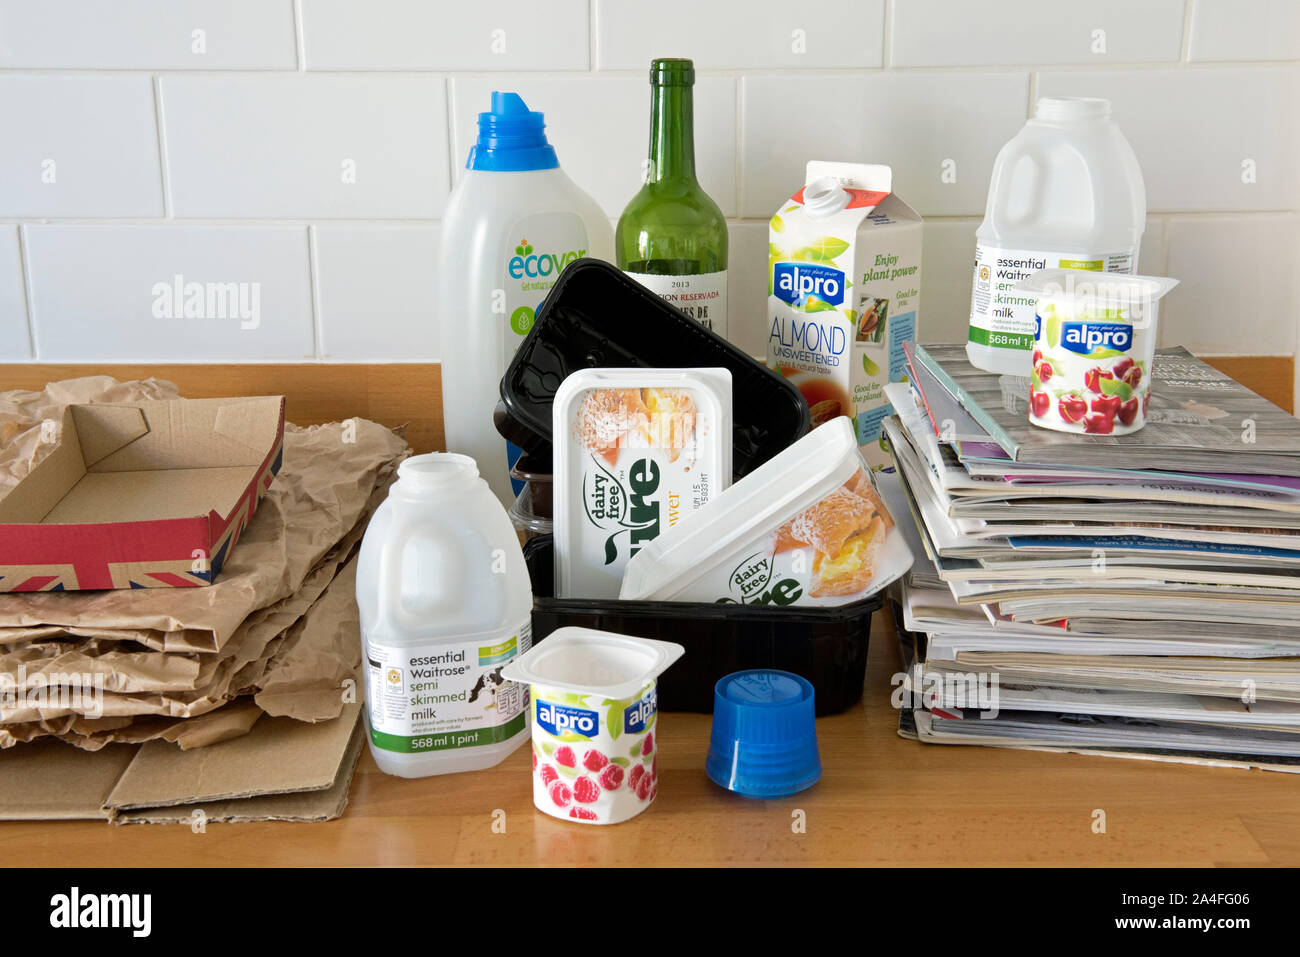 Artículos para el hogar sobre encimera de cocina listo para ser reciclado como el plástico, papel, cartón y catálogos antiguos. Foto de stock